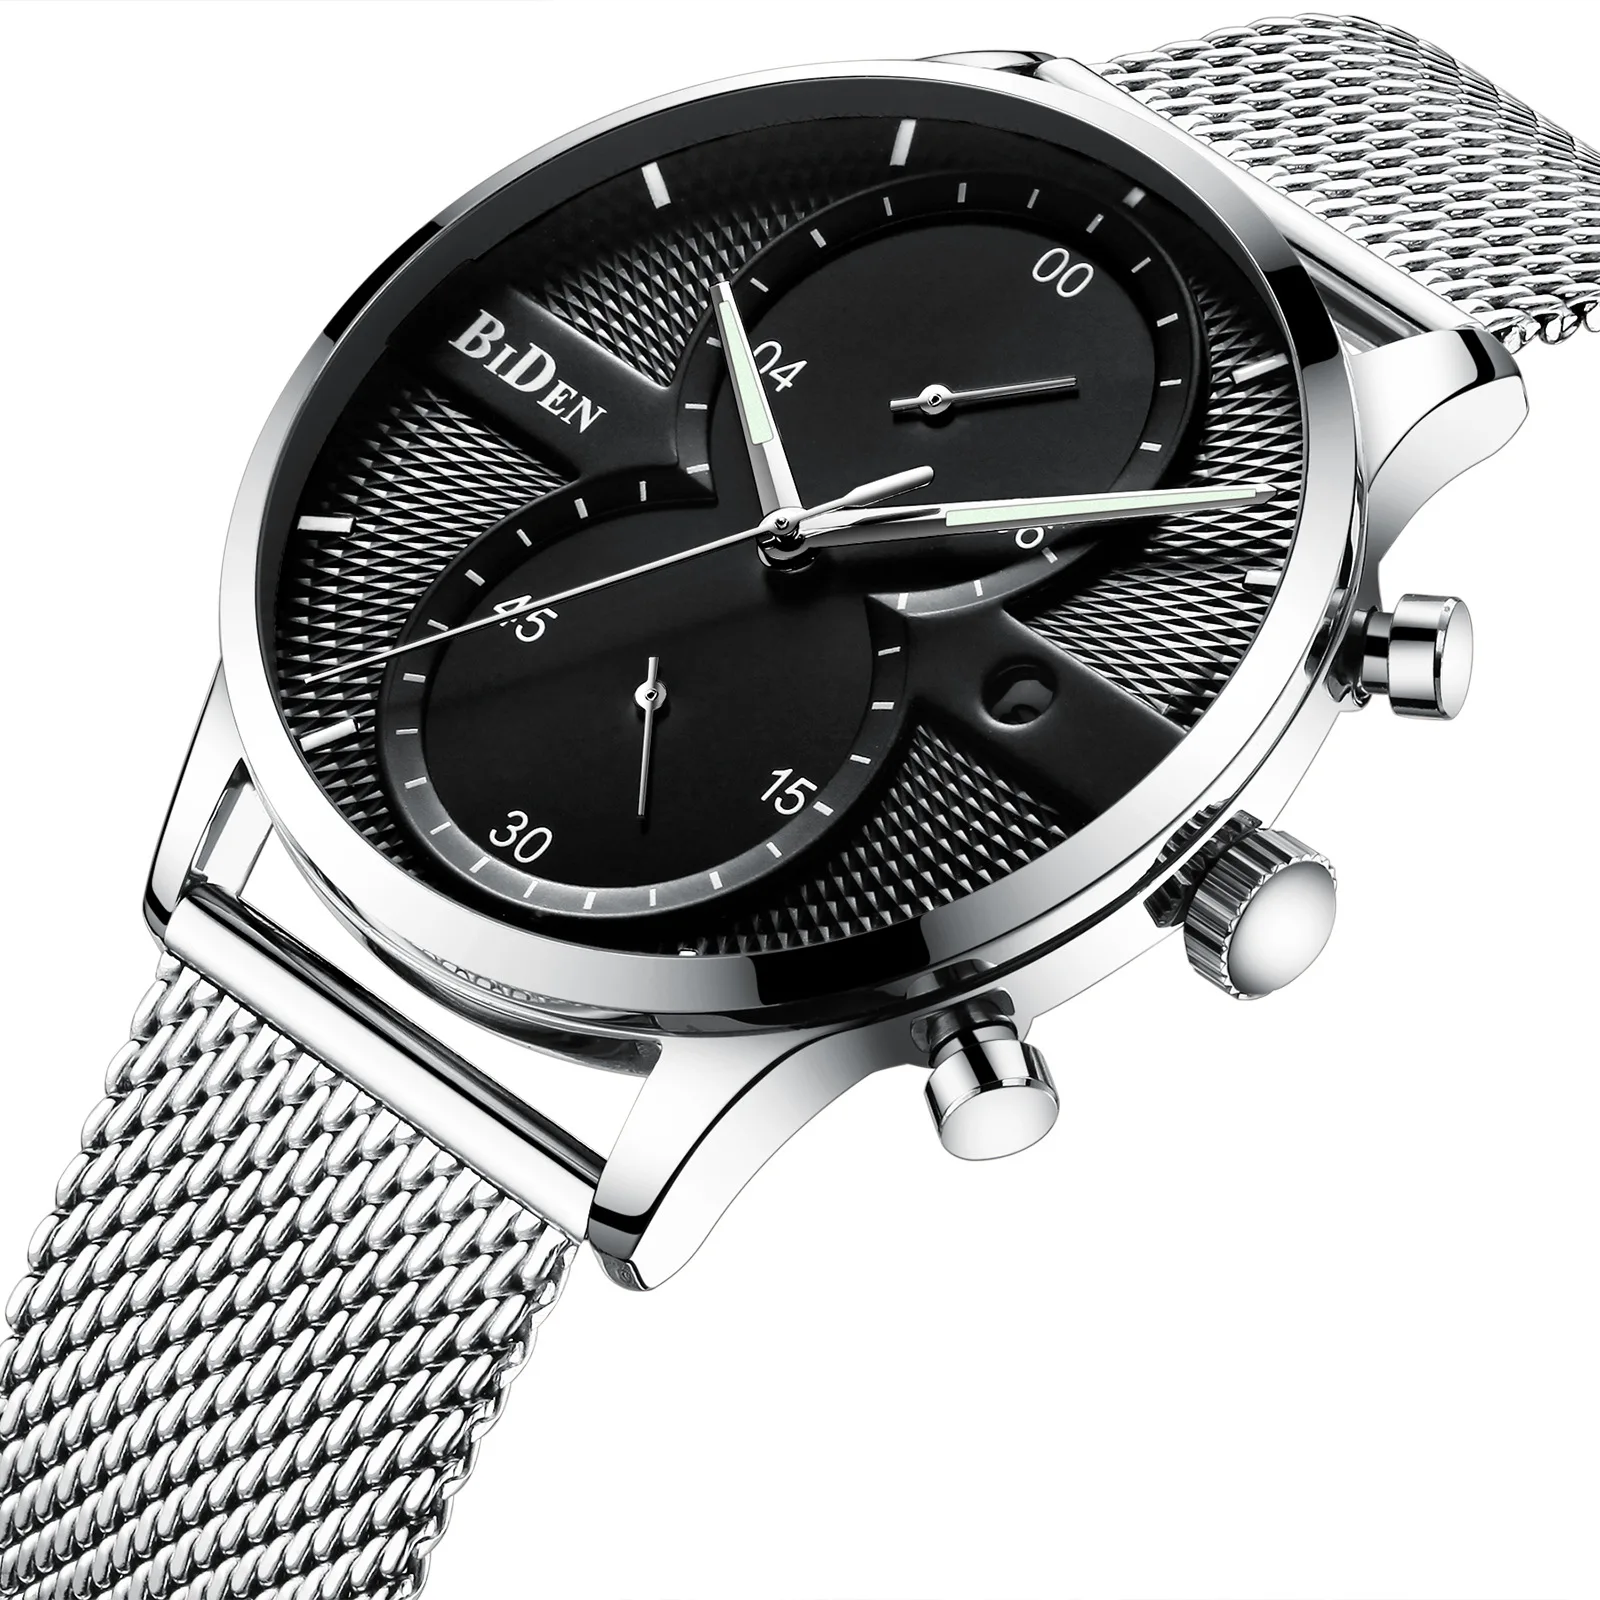 Biden мужские часы люксовый бренд мужские s часы кварцевые Многофункциональные деловые мужские часы водонепроницаемые модные часы мужские